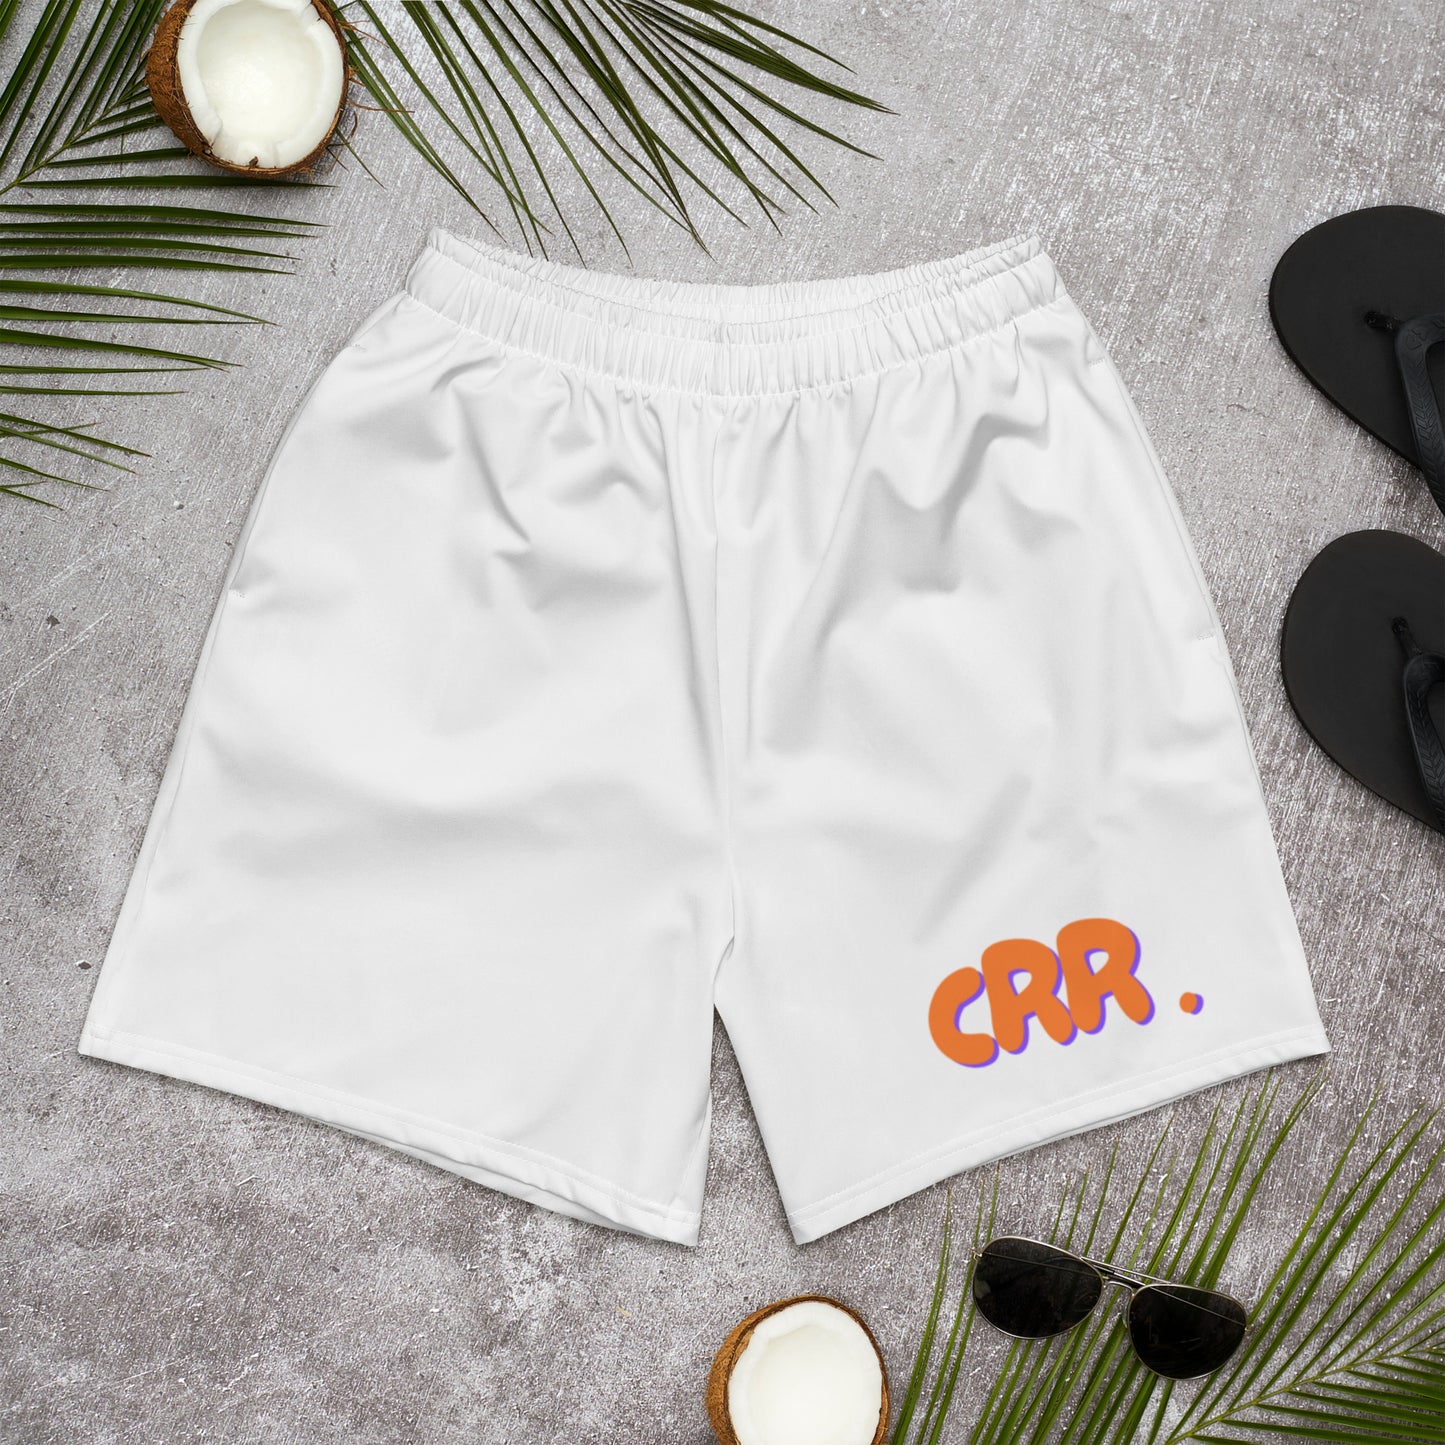 CRR. White Shorts